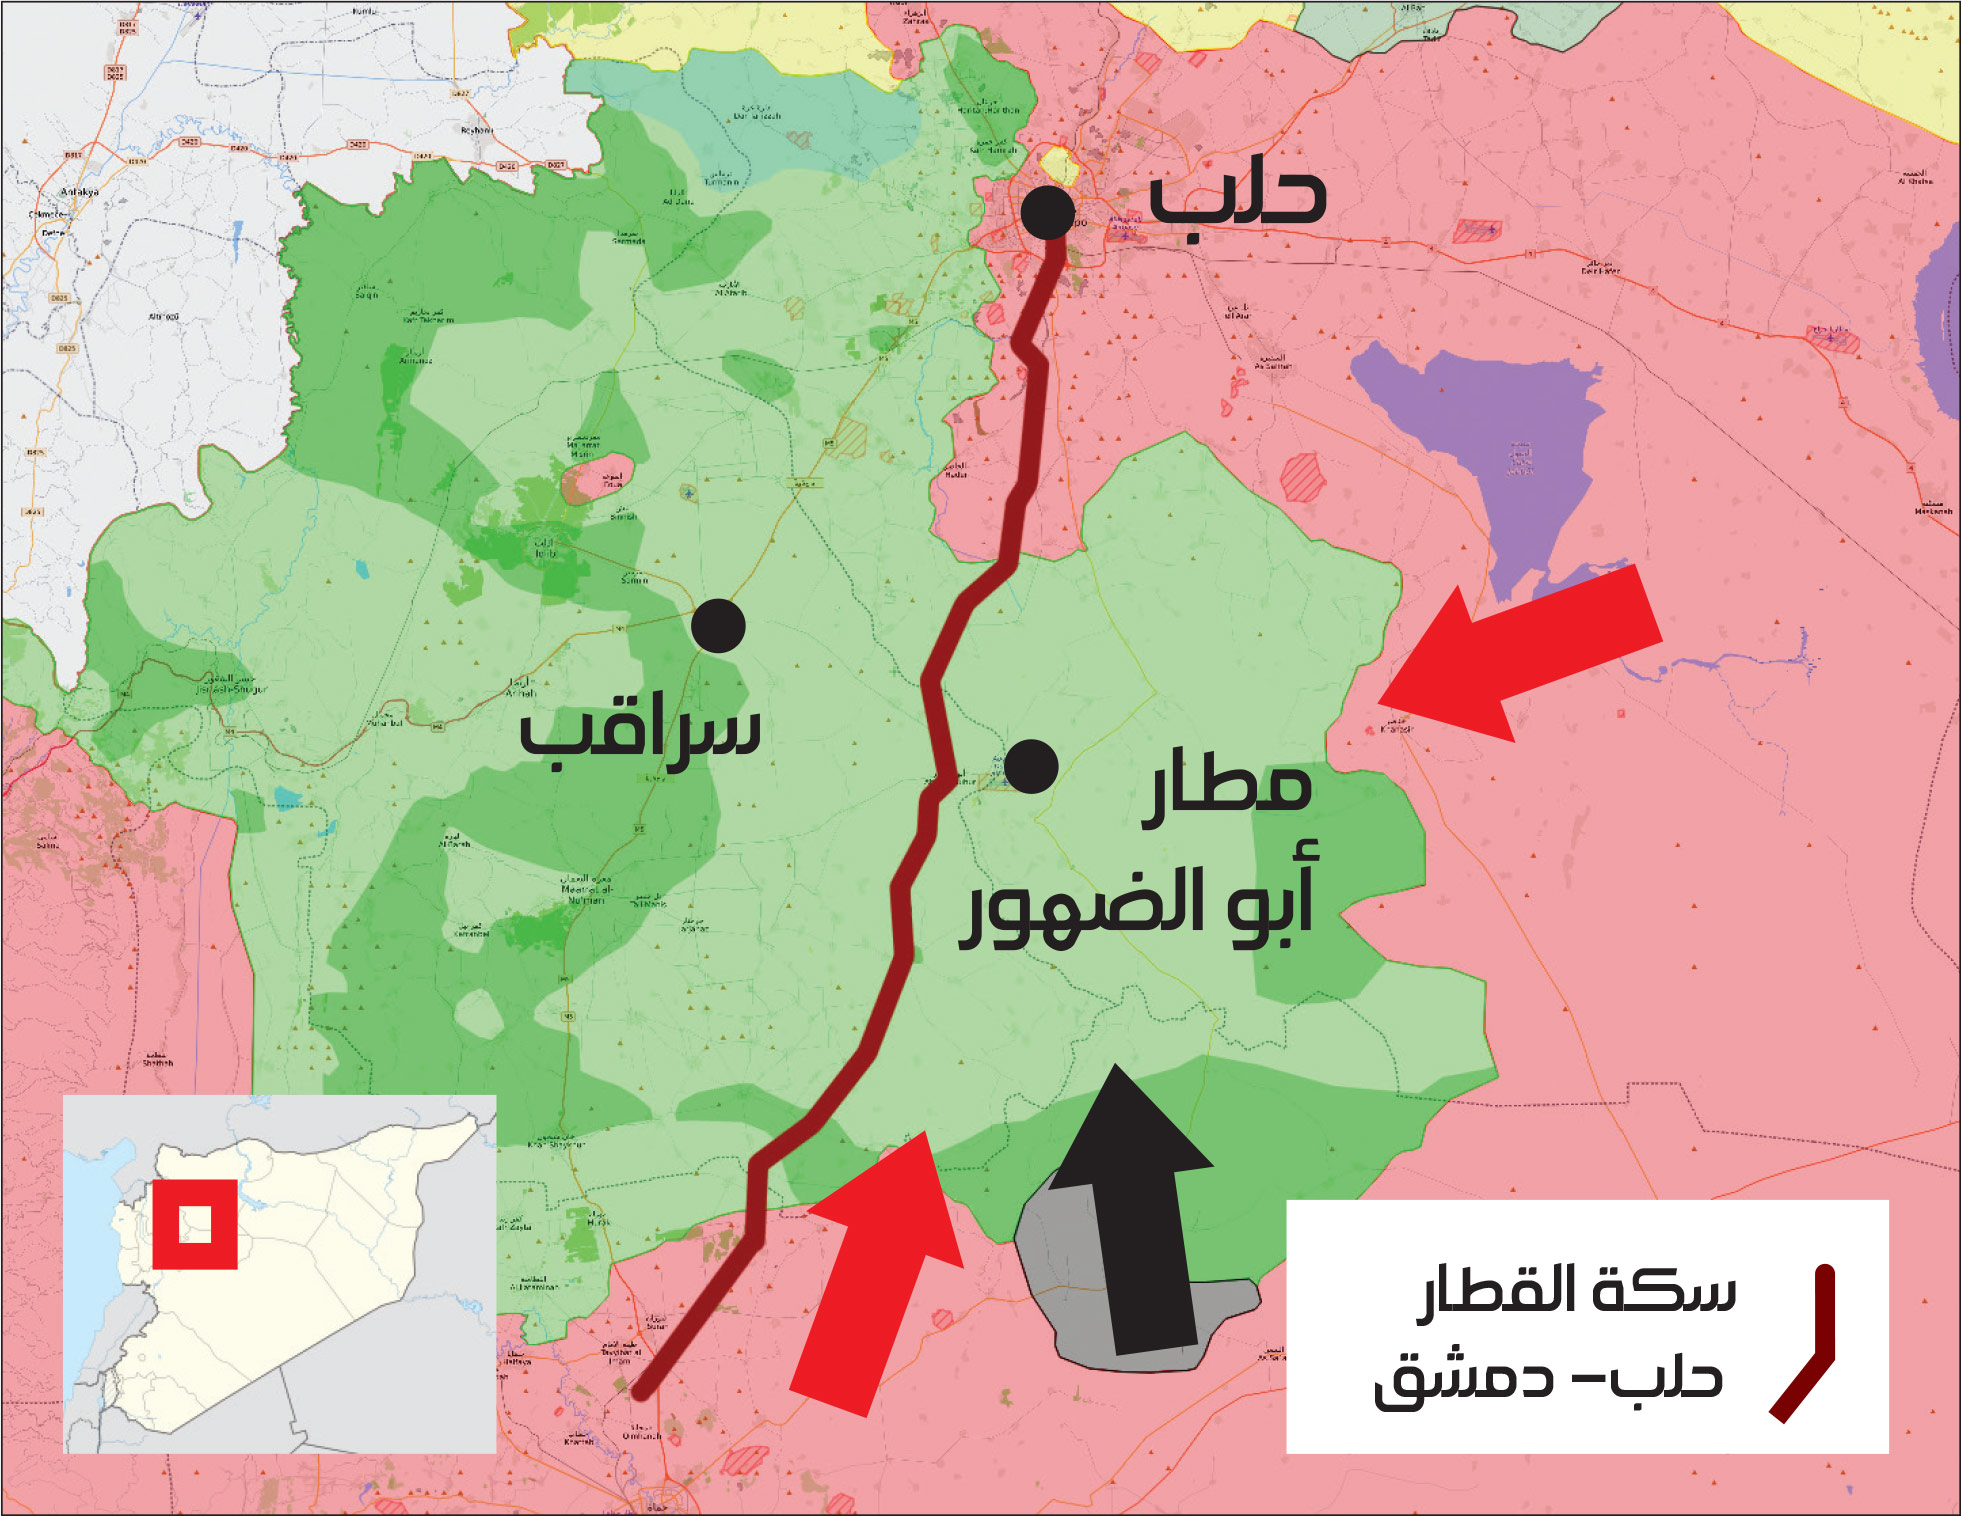 خريطة توزع السيطرة في محافظة إدلب – 16 كانون الأوخريطة توزع السيطرة في محافظة إدلب – 16 كانون الأول 2017 (عنب بلدي)ل 2017 (عنب بلدي)